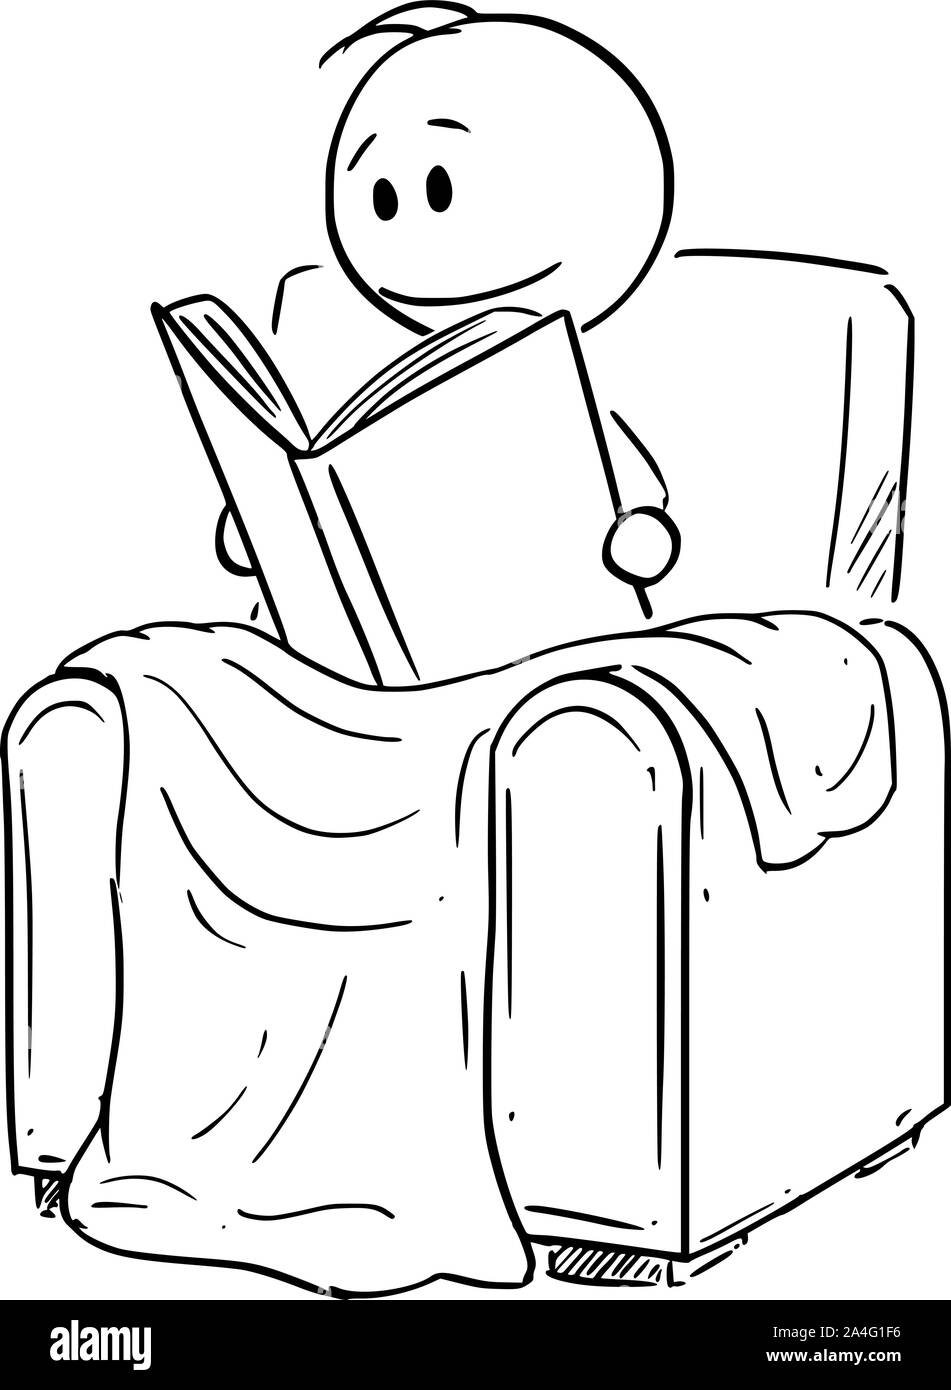 Vector cartoon stick figura disegno illustrazione concettuale dell'uomo ubicazione sotto coperta in confortevole poltrona o sedia e la lettura del libro. Illustrazione Vettoriale